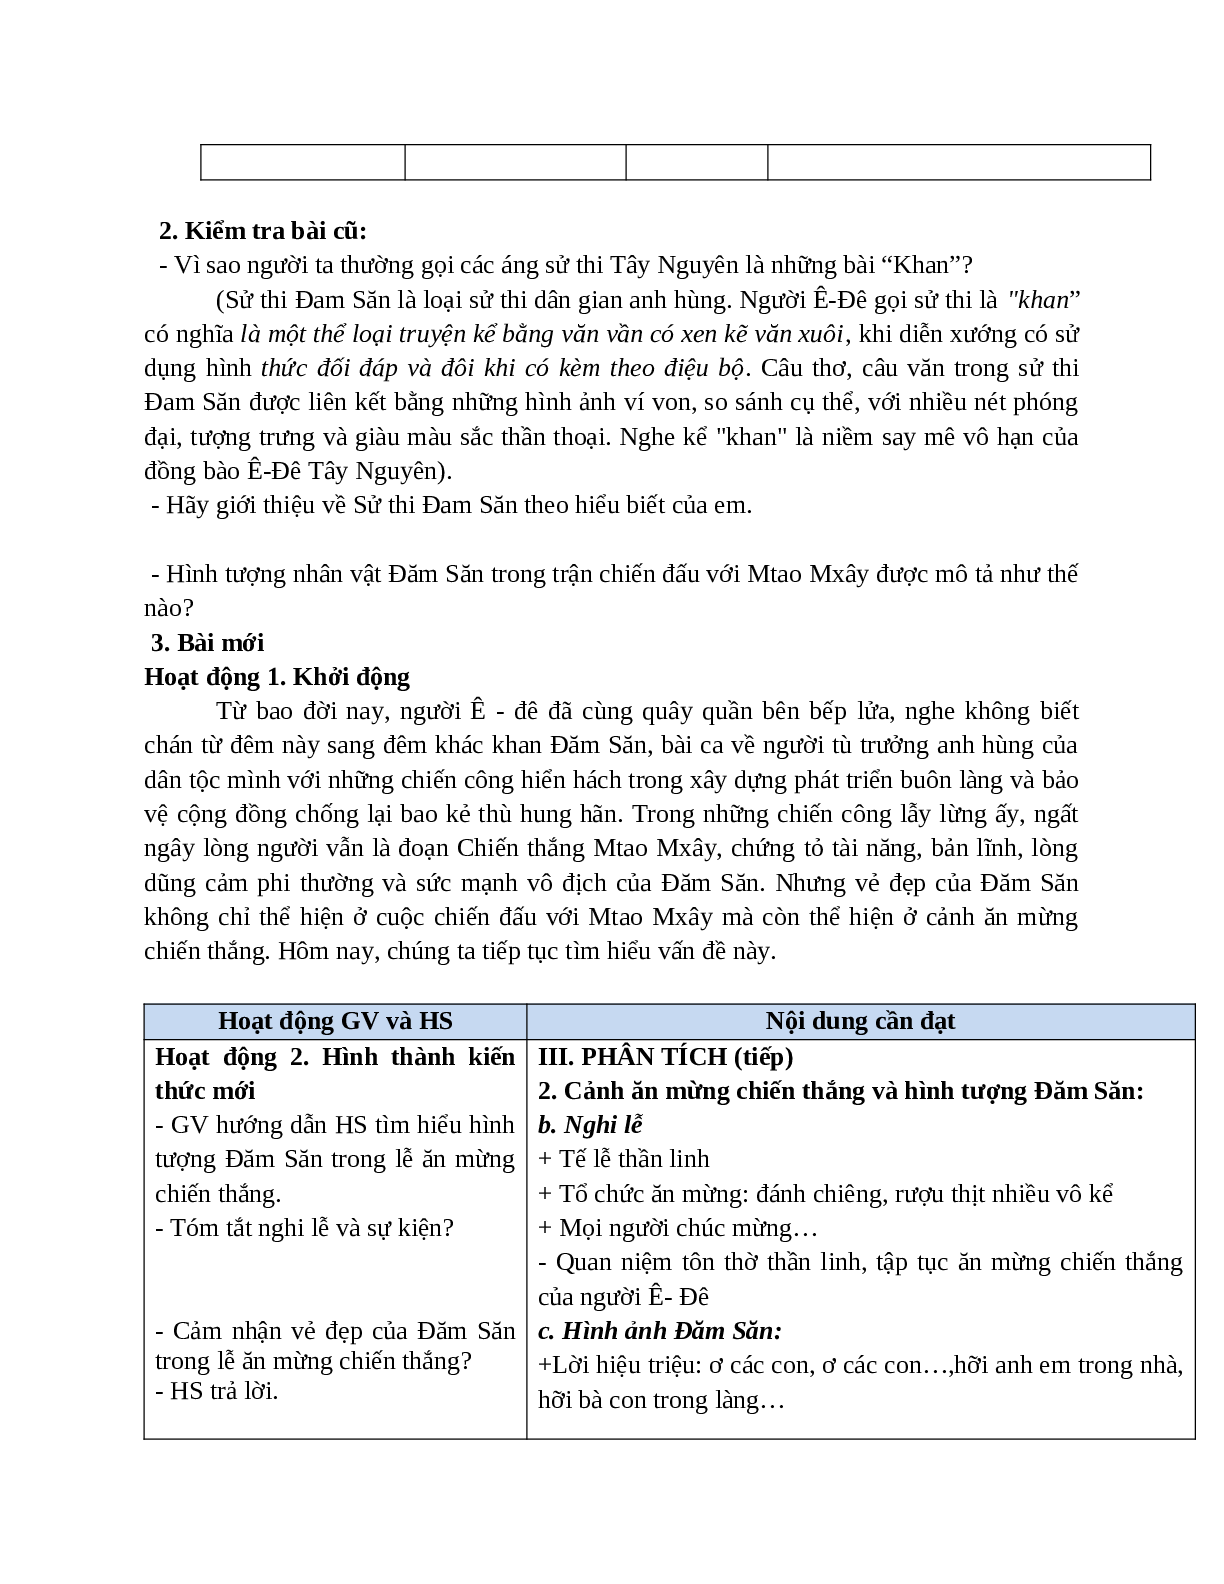 Giáo án Ngữ văn 10, tập 1, bài Chiến thắng Mtao-Mxây mới nhất (trang 2)